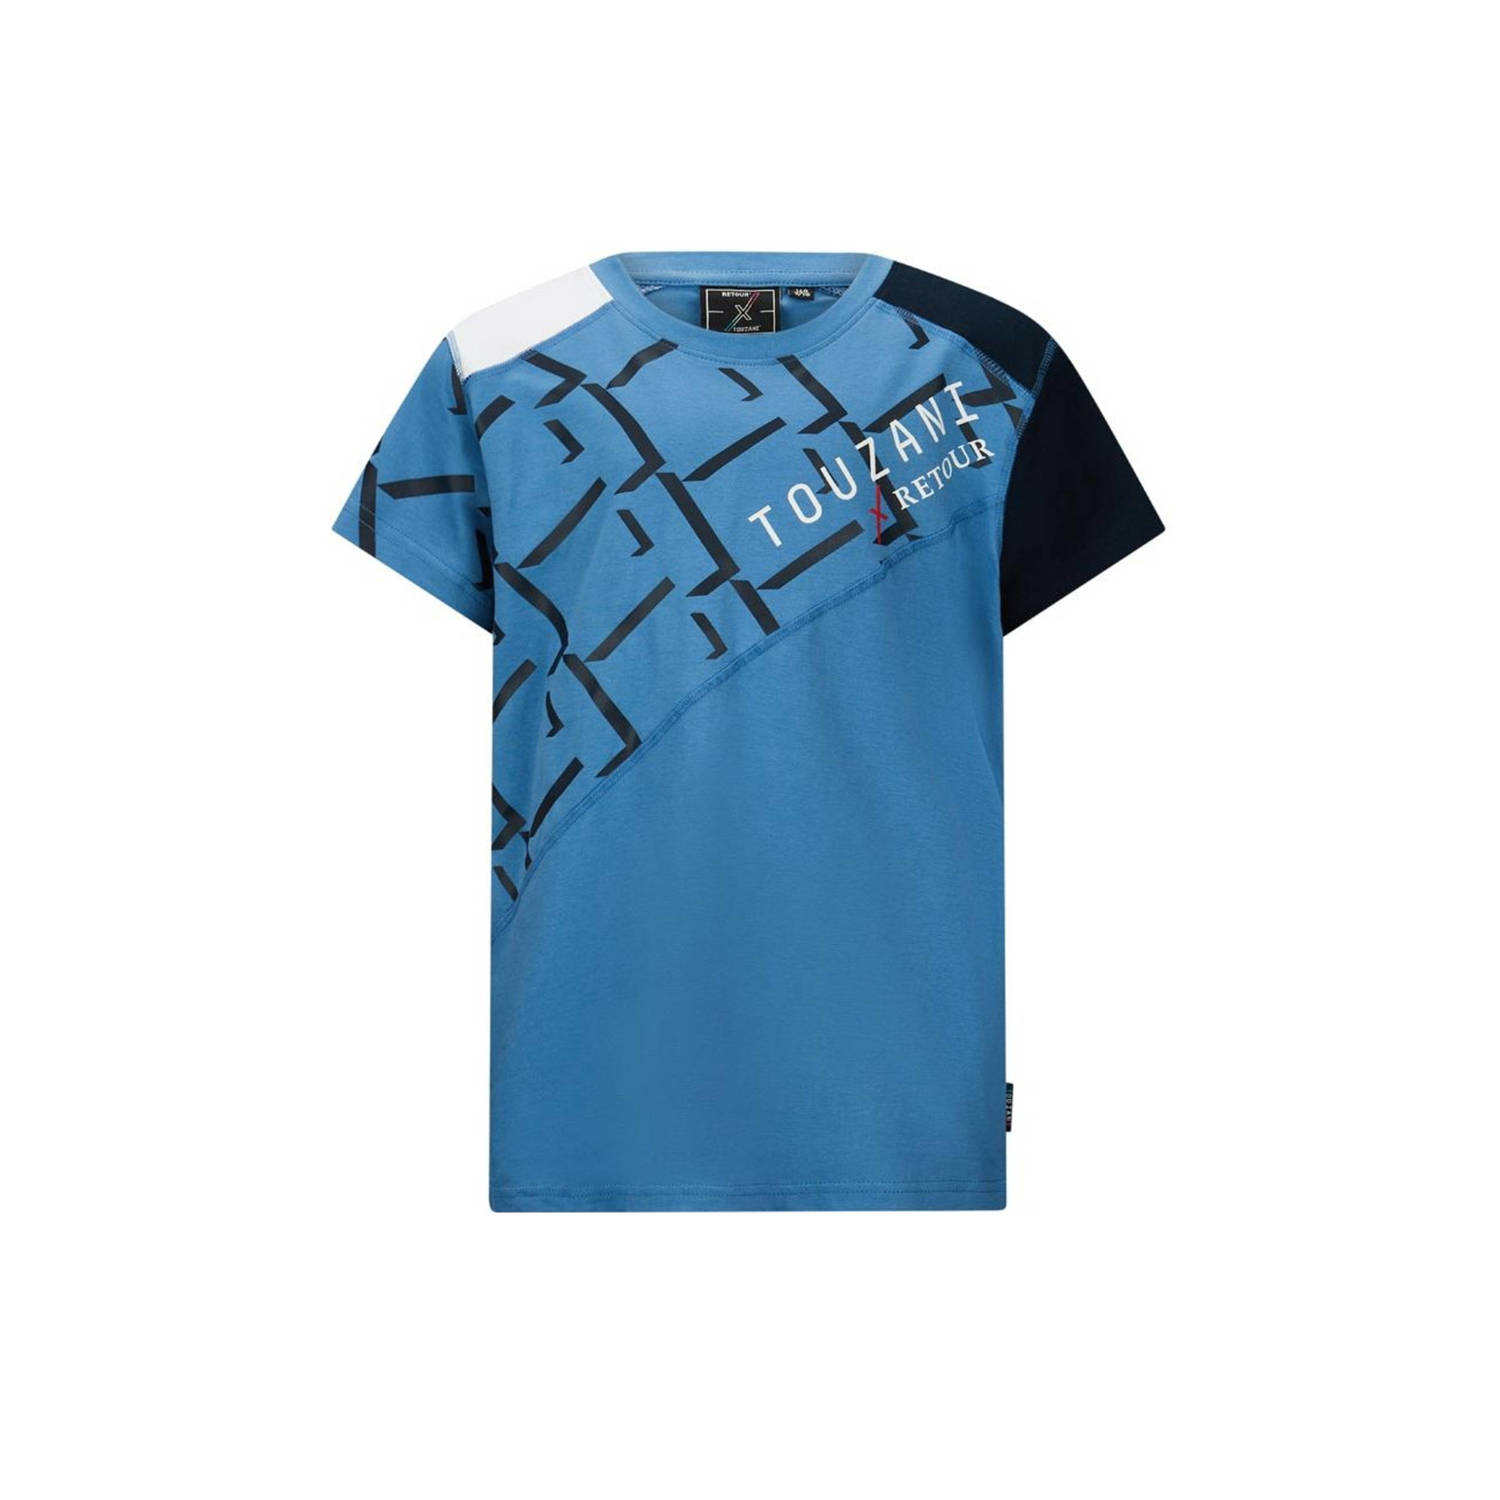 Retour Jeans Retour X Touzani T-shirt Goal met printopdruk blauw donkerblauw